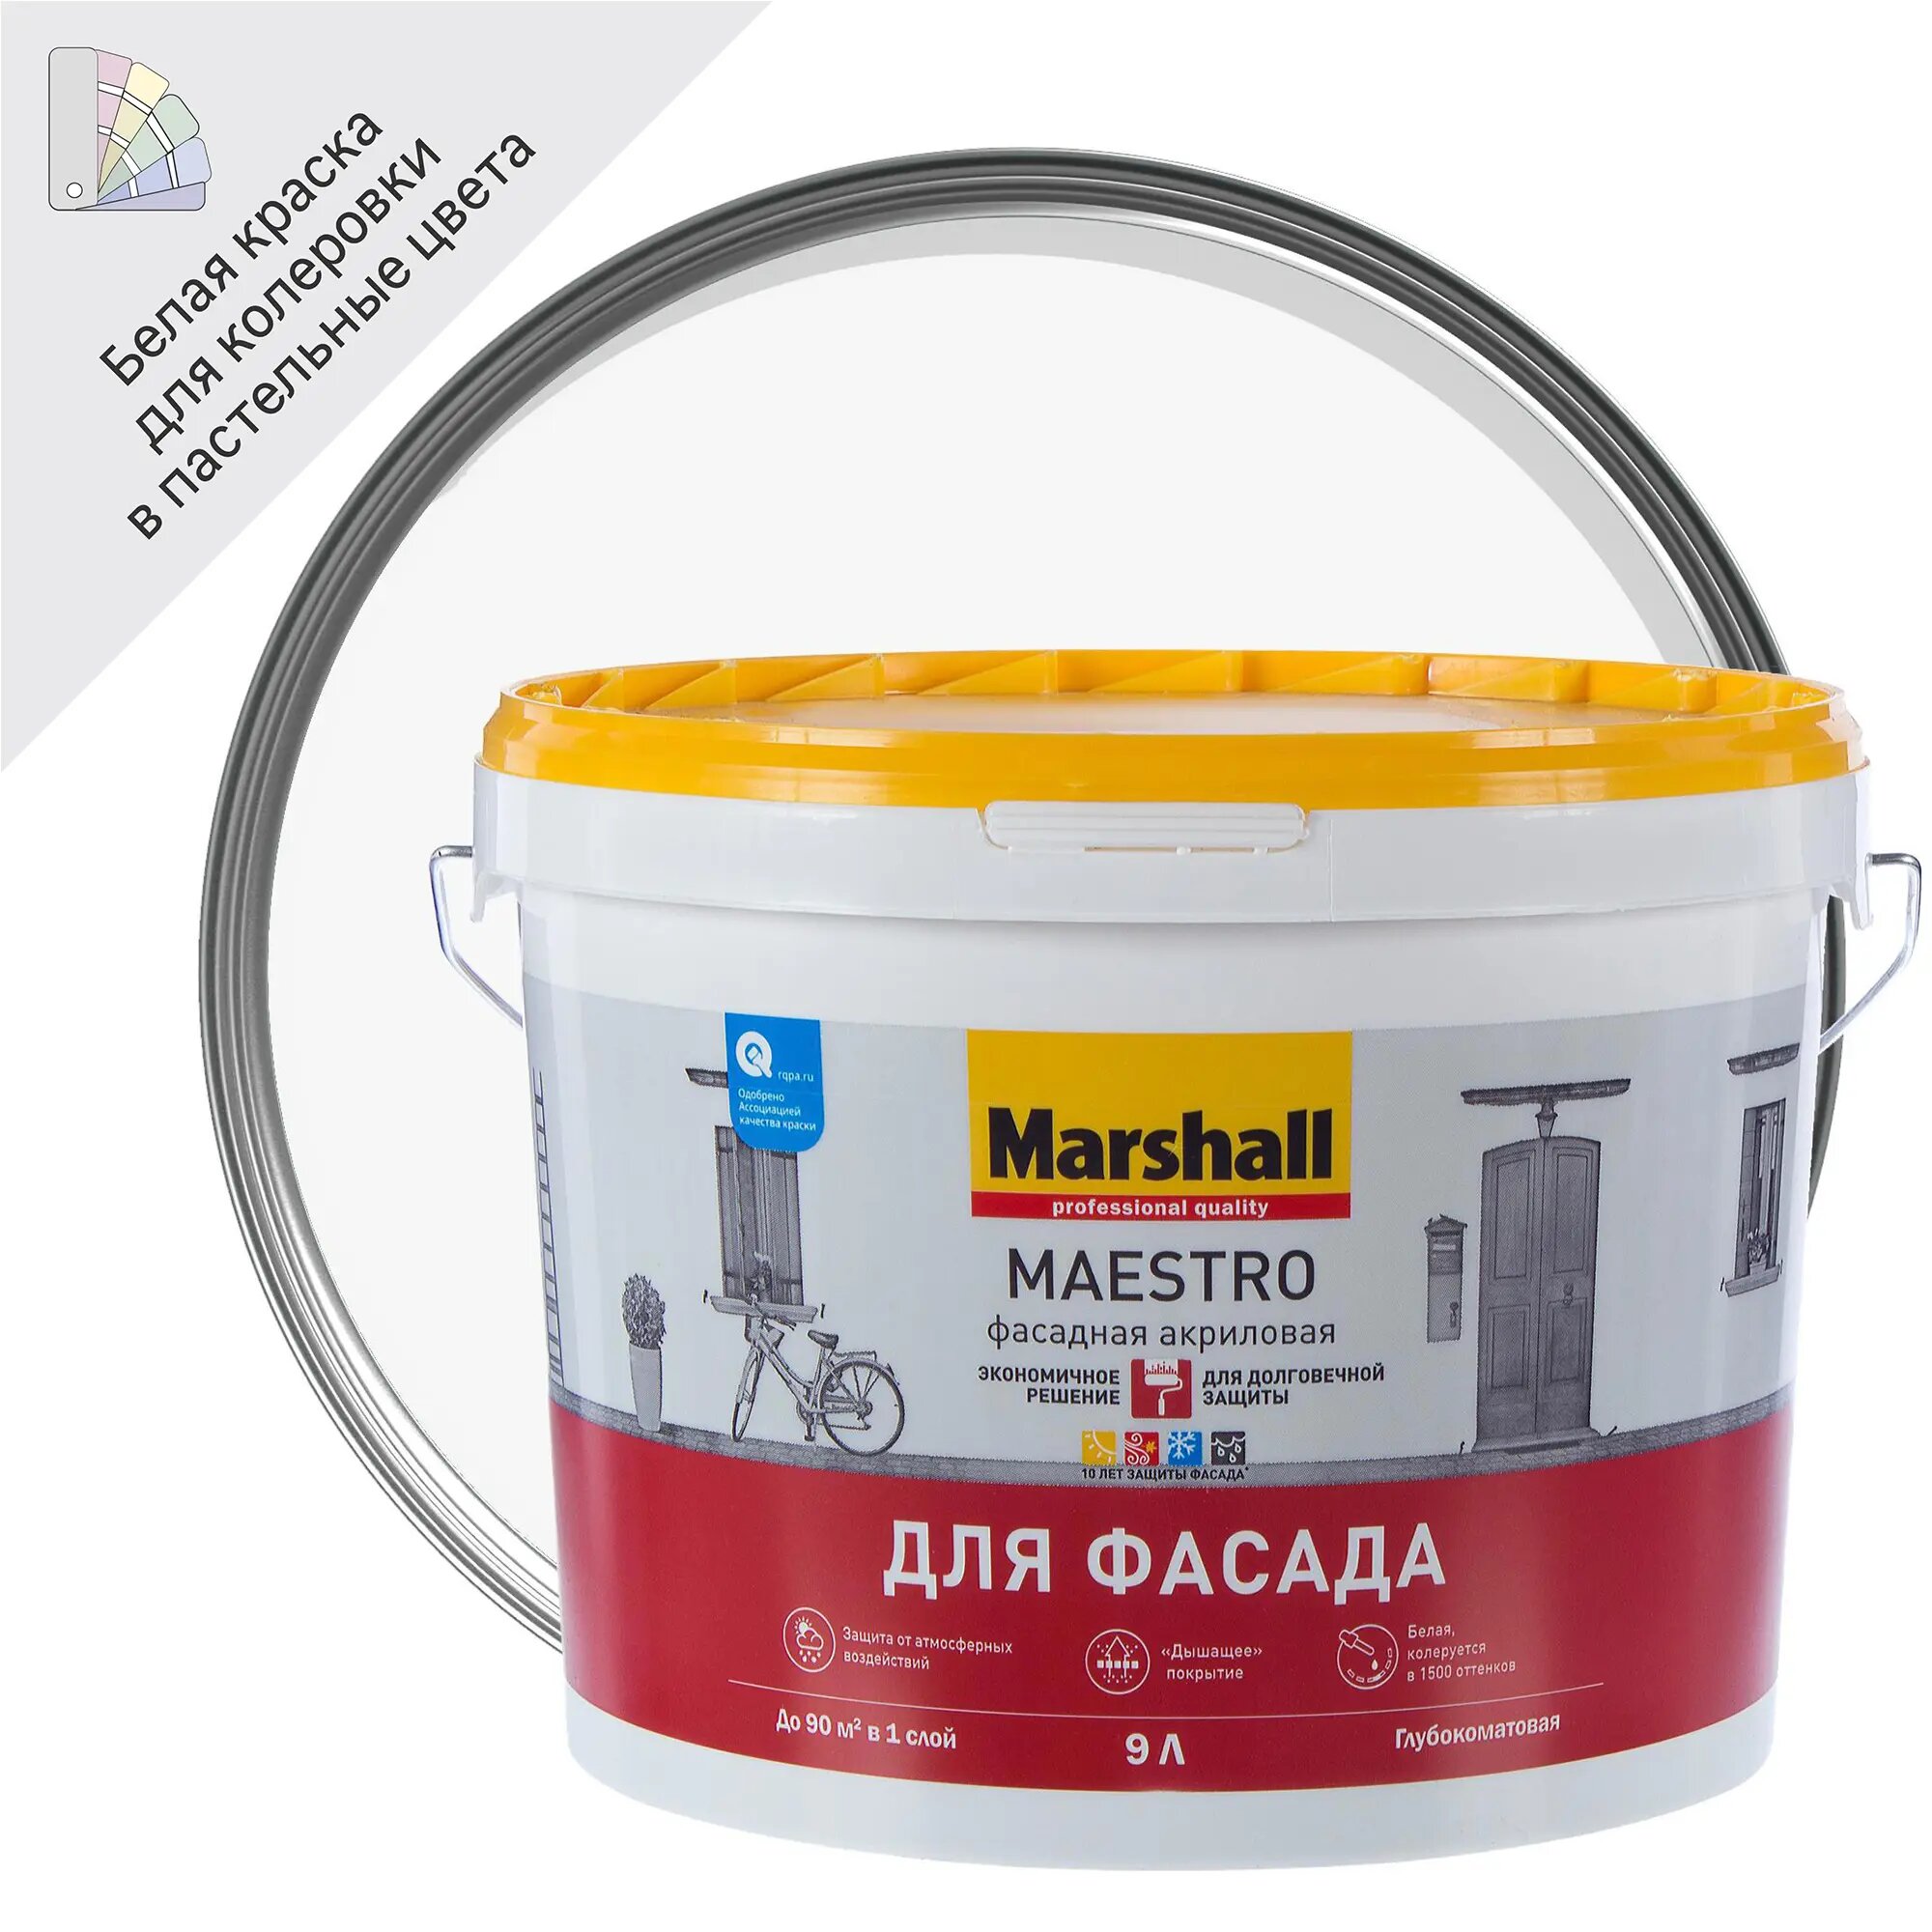 MARSHALL MAESTRO фасадная краска для фасадных поверхностей, латексная, матовая, база BW 9 л 5248873